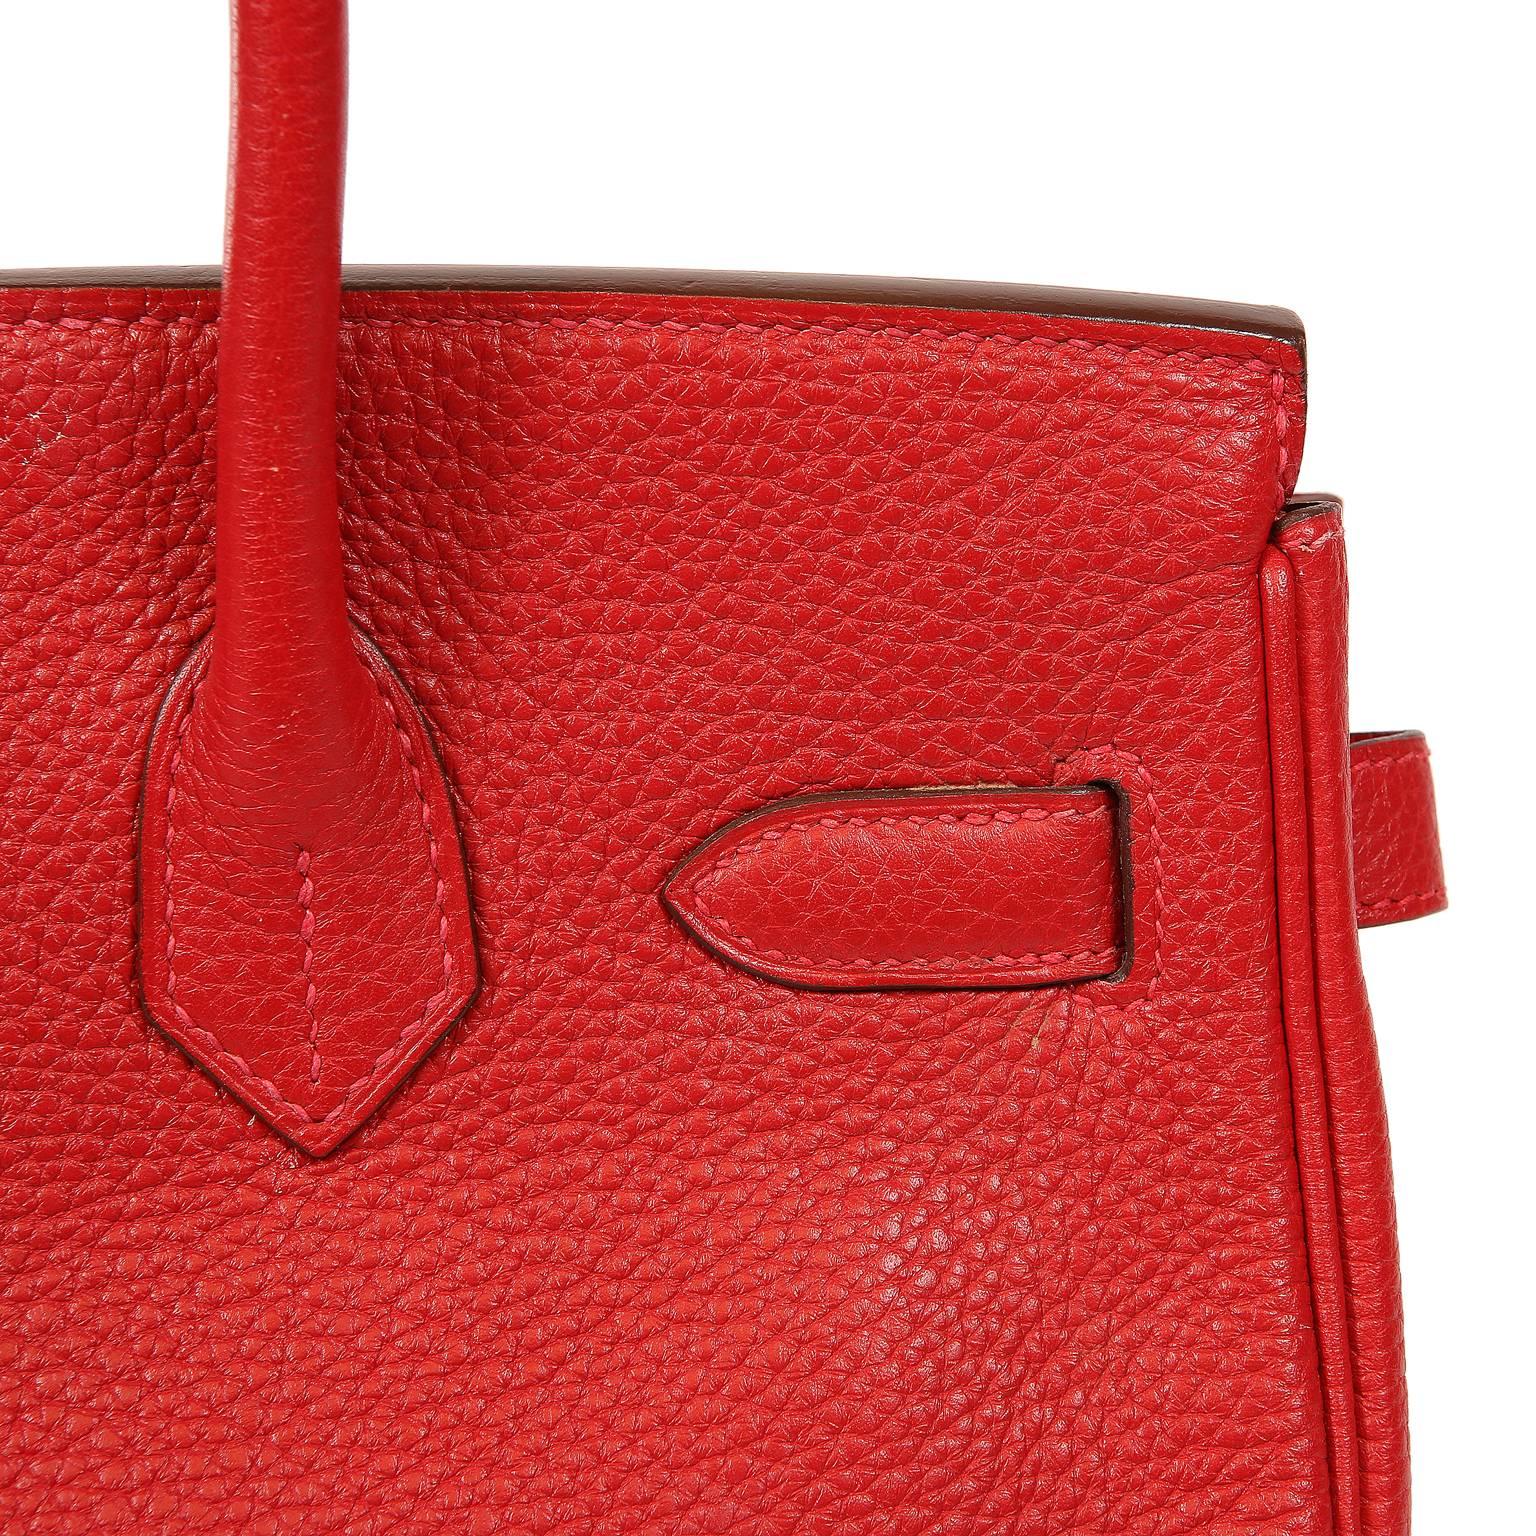 Hermès Rouge H Togo 30 cm Birkin Bag- Palladium Hardware 6